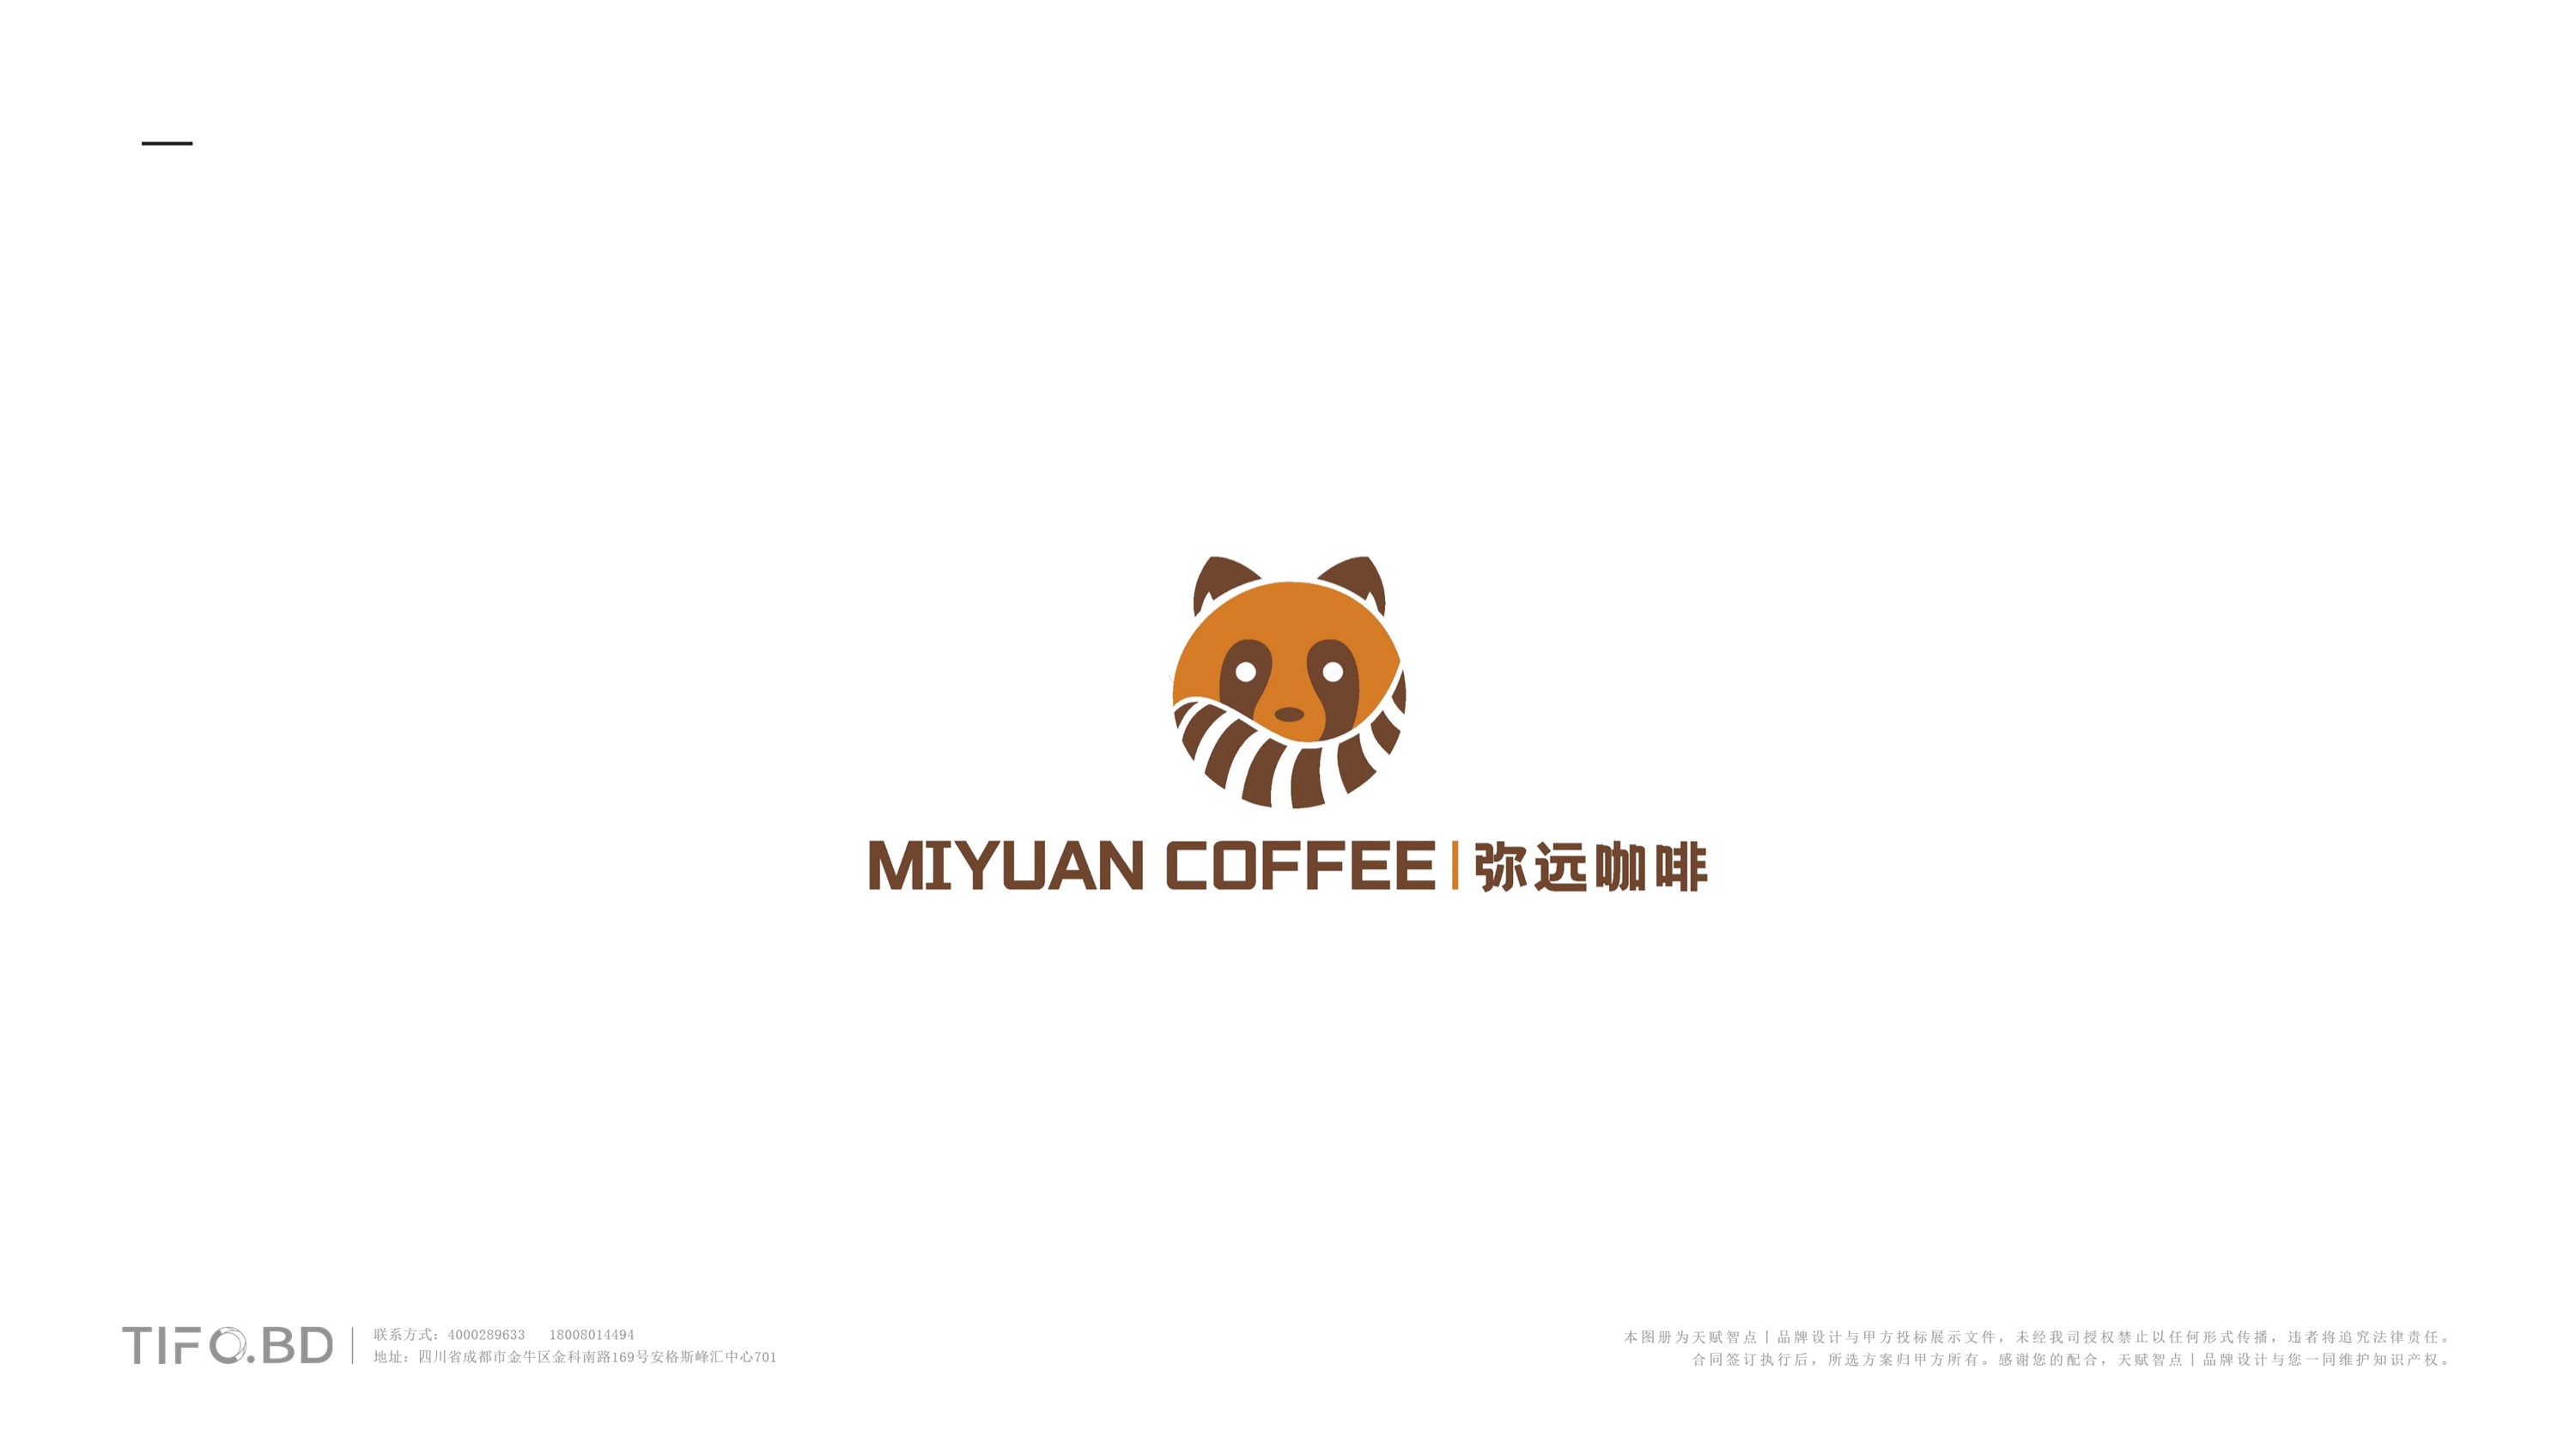 咖啡餐饮品牌全案设计 (30).jpg